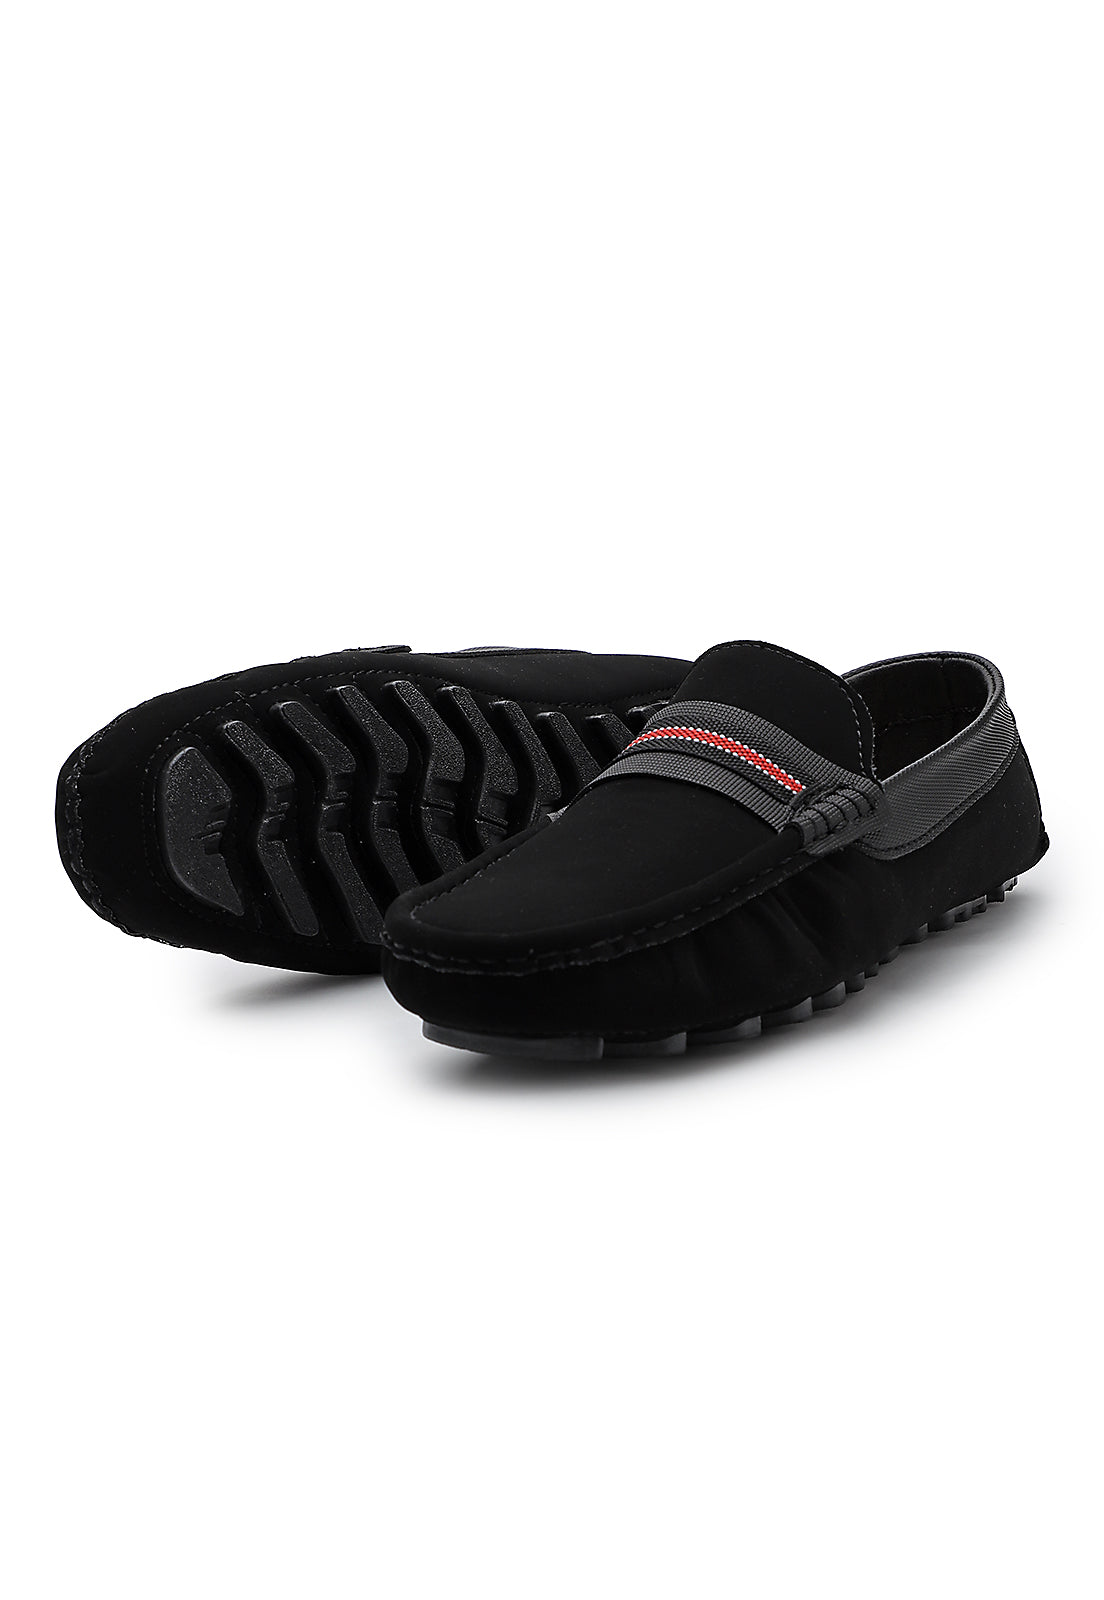 Zapato hombre tubular Negro Tellenzi 032